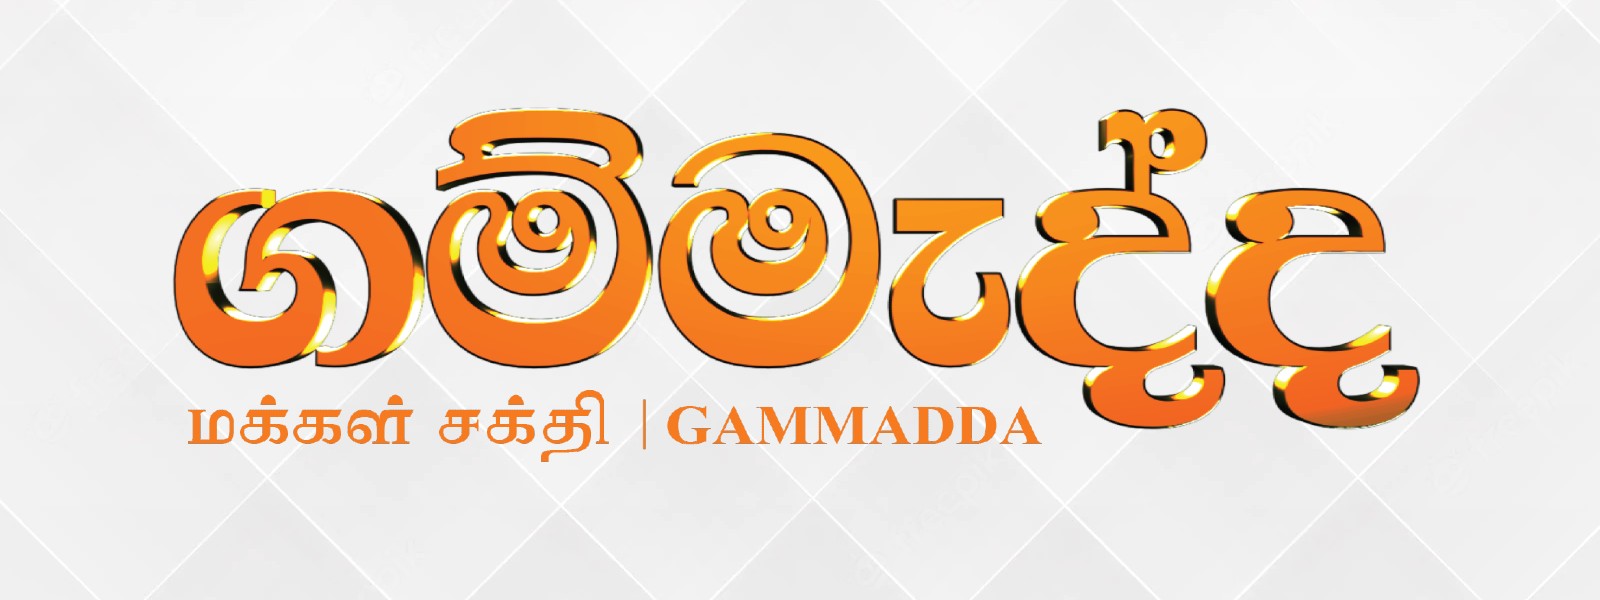 6th Edition of Gammadda Door to Door underway in three districts